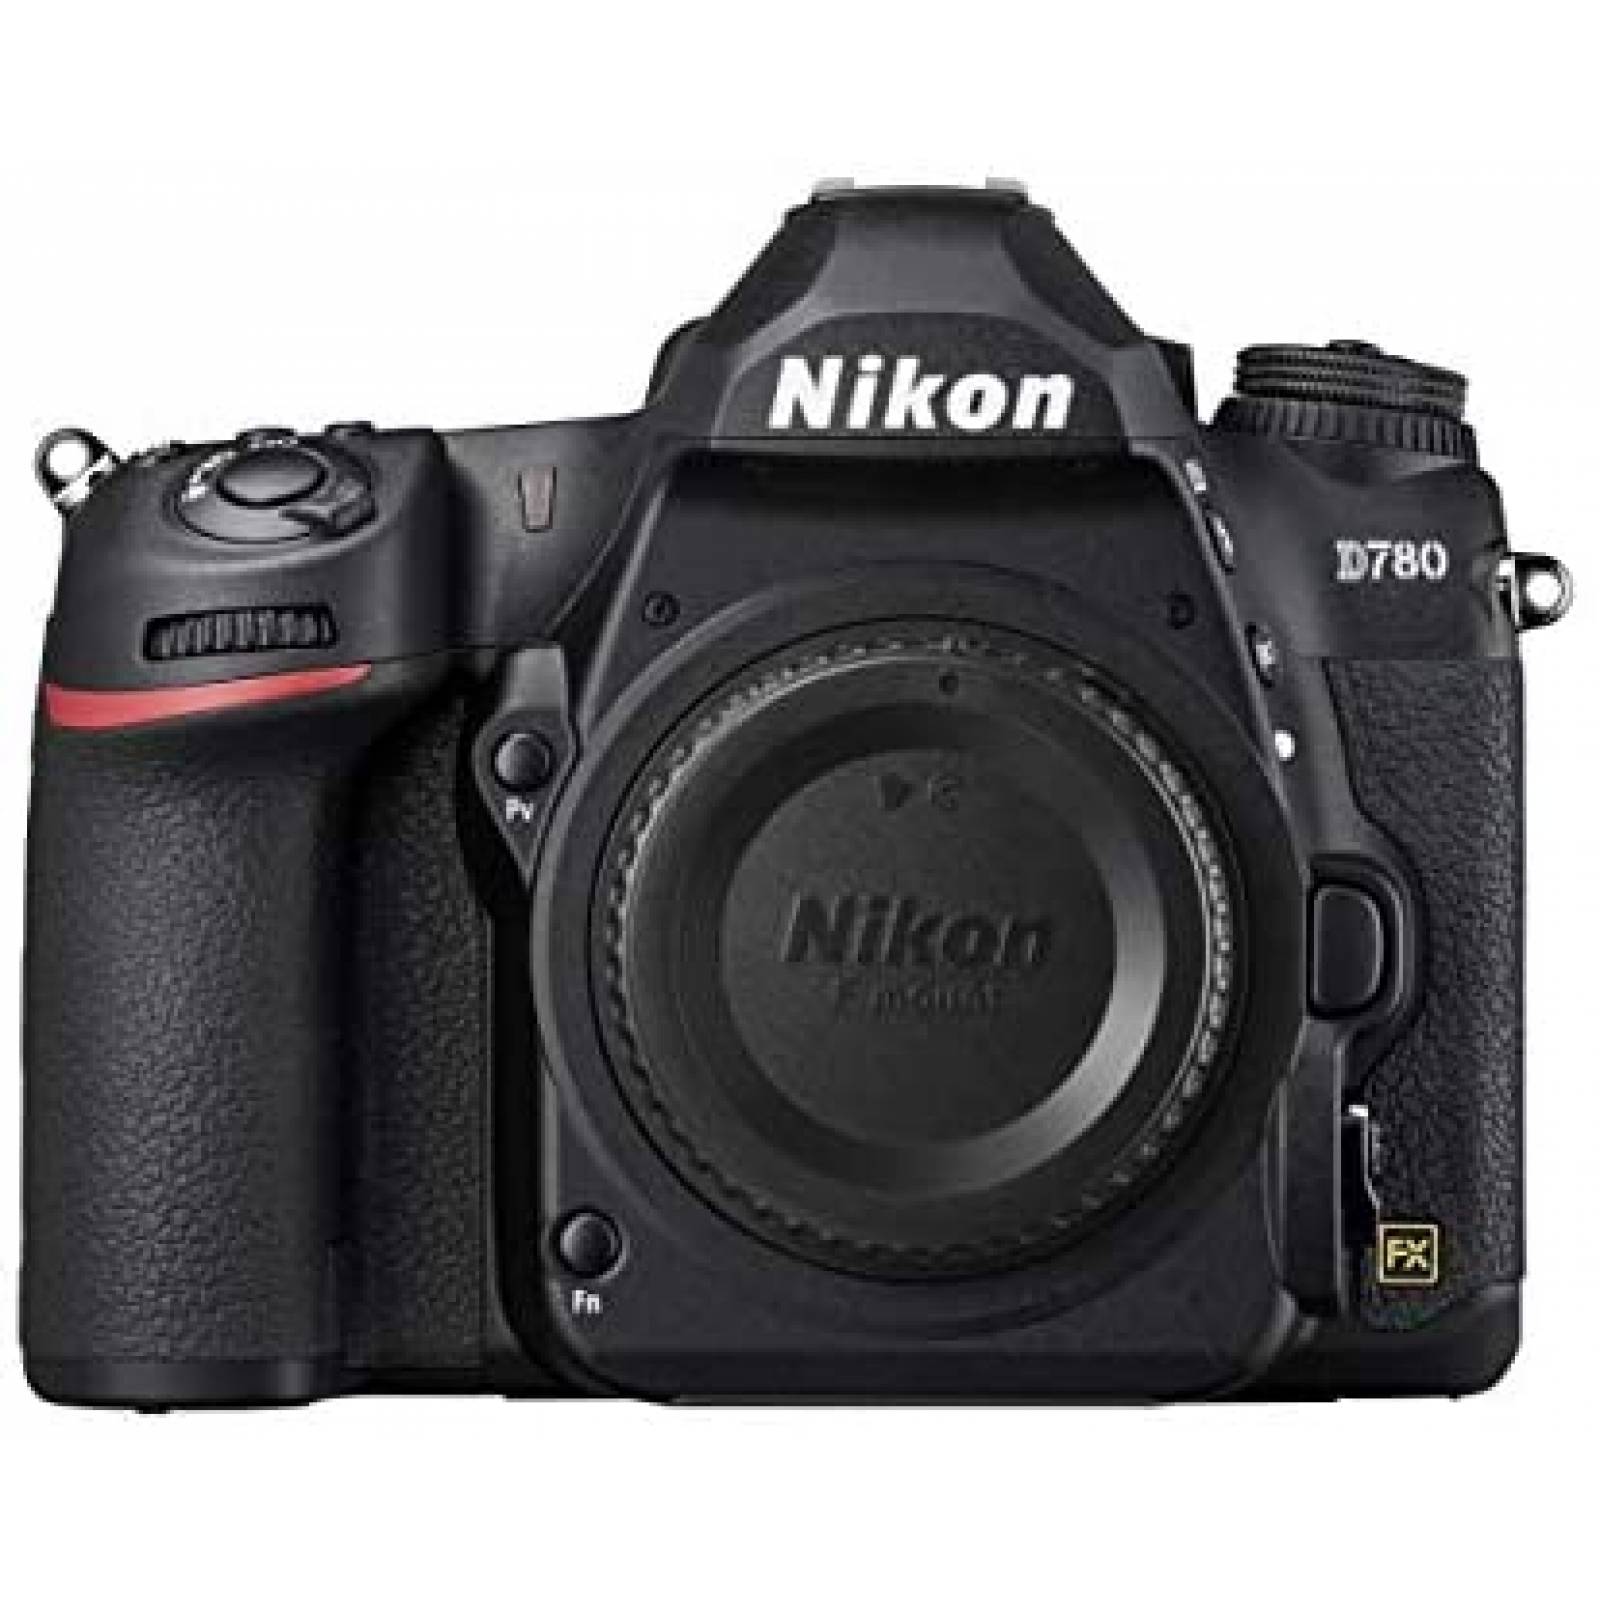 Cámara DSLR Nikon D780 24.5 MP 4K UHD video -Negro 